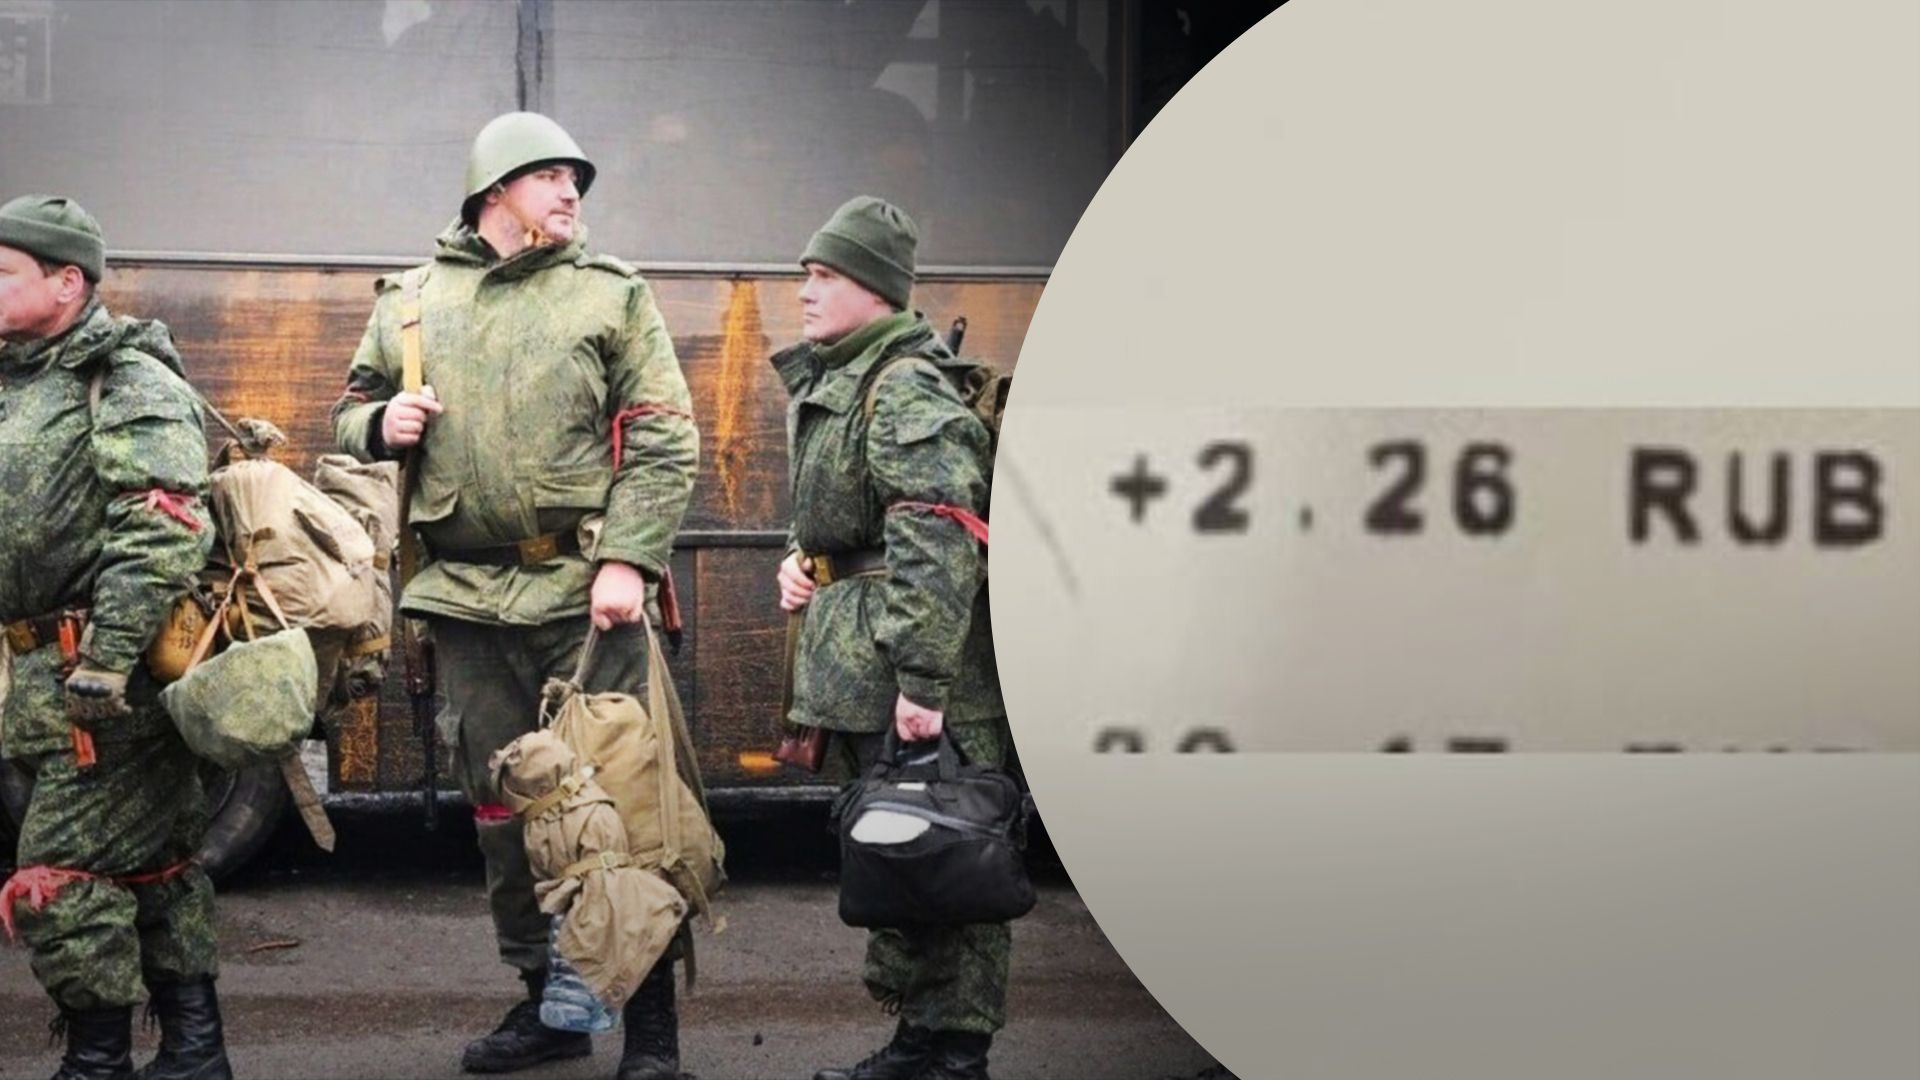 Росіянка отримала виплати за мобілізованого 2,26 рублі